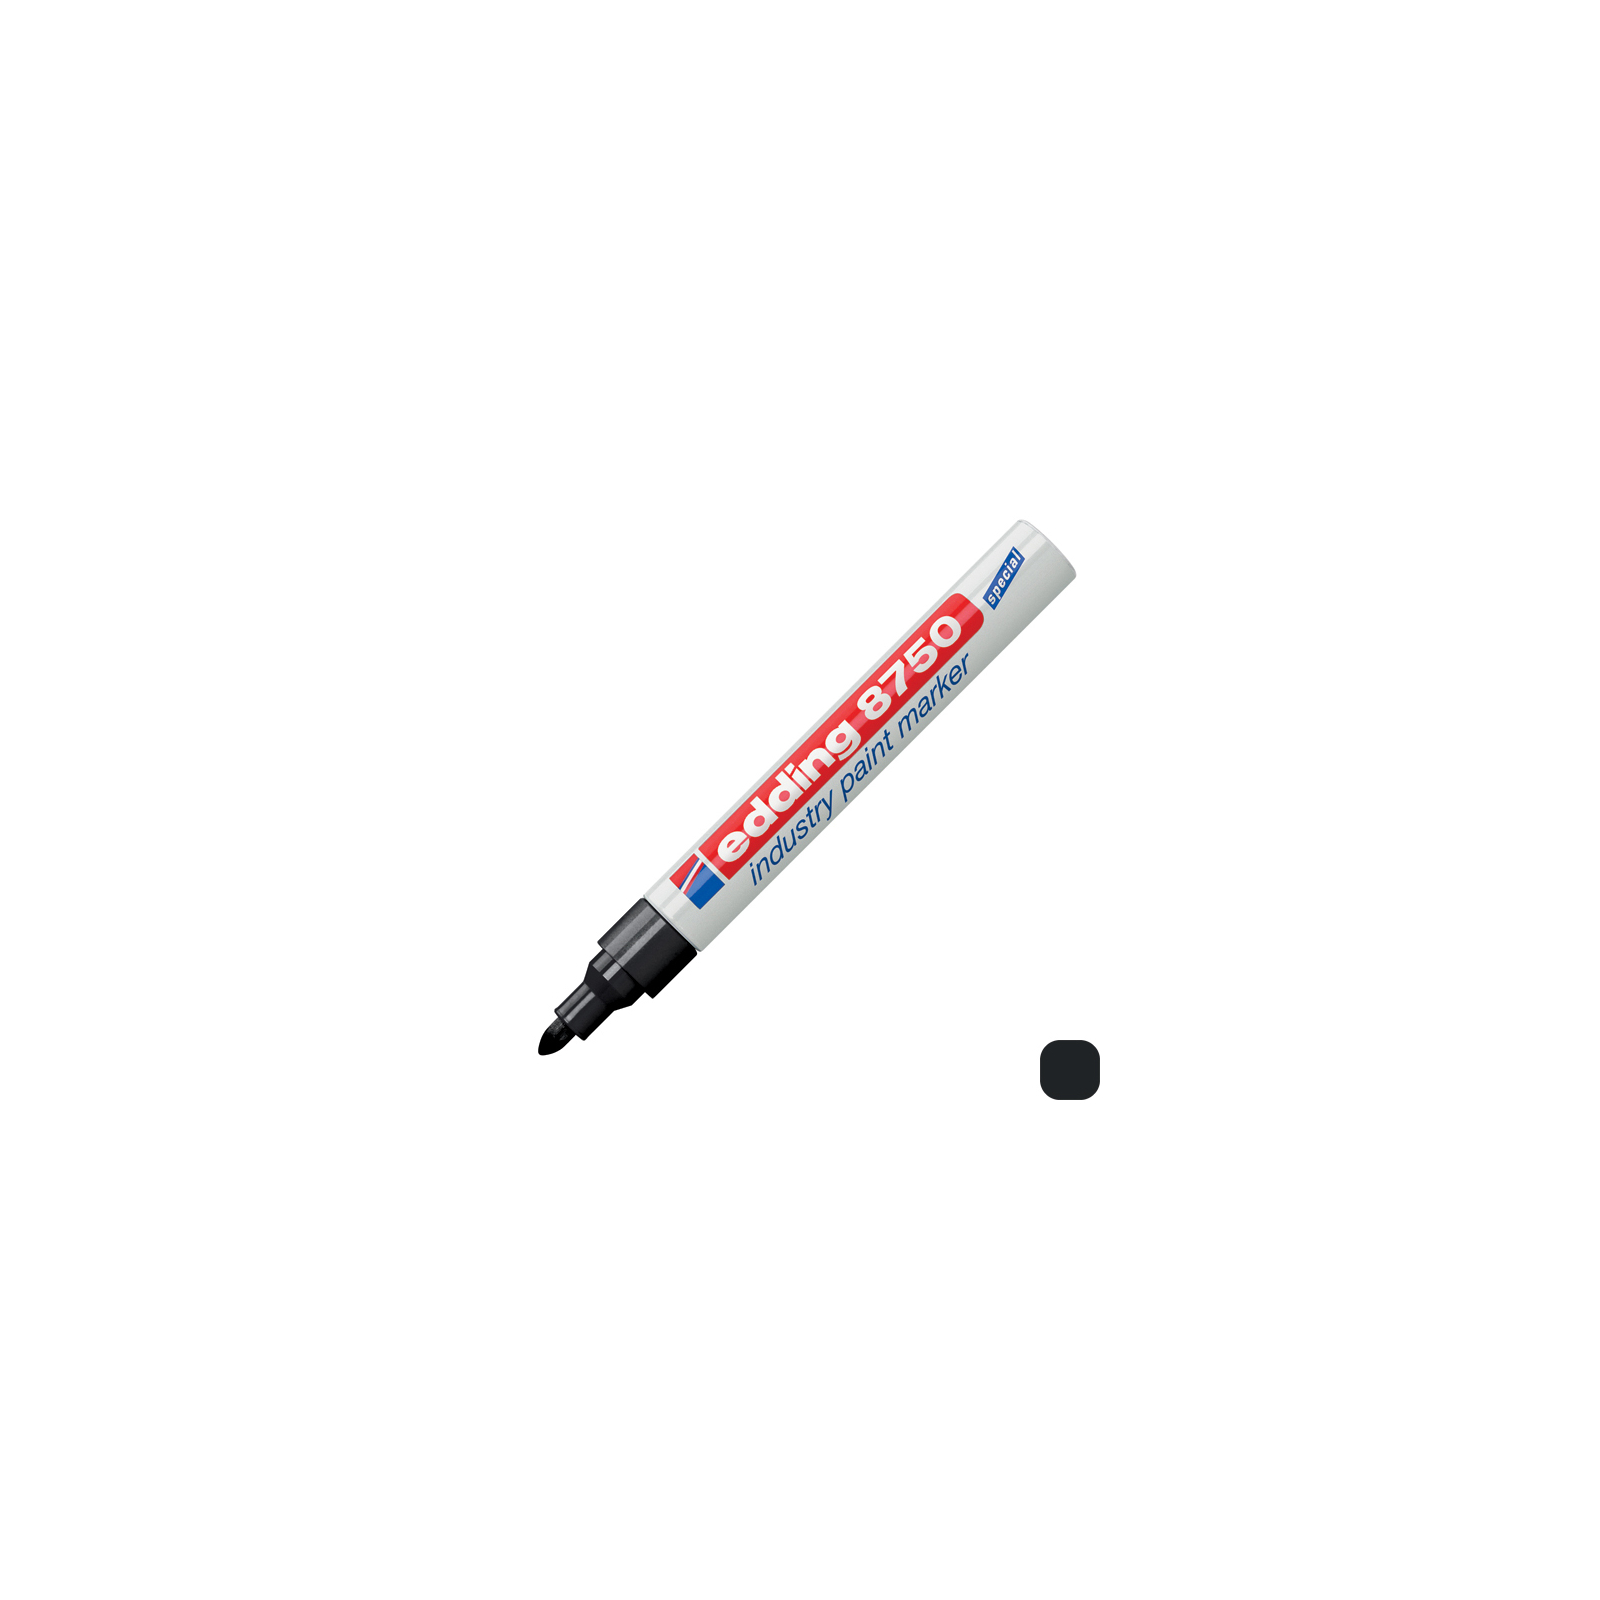 Маркер Edding Спеціальний промисловий лак-маркер Industry Paint 8750 2-4 мм Червоний (e-8750/02) зображення 2